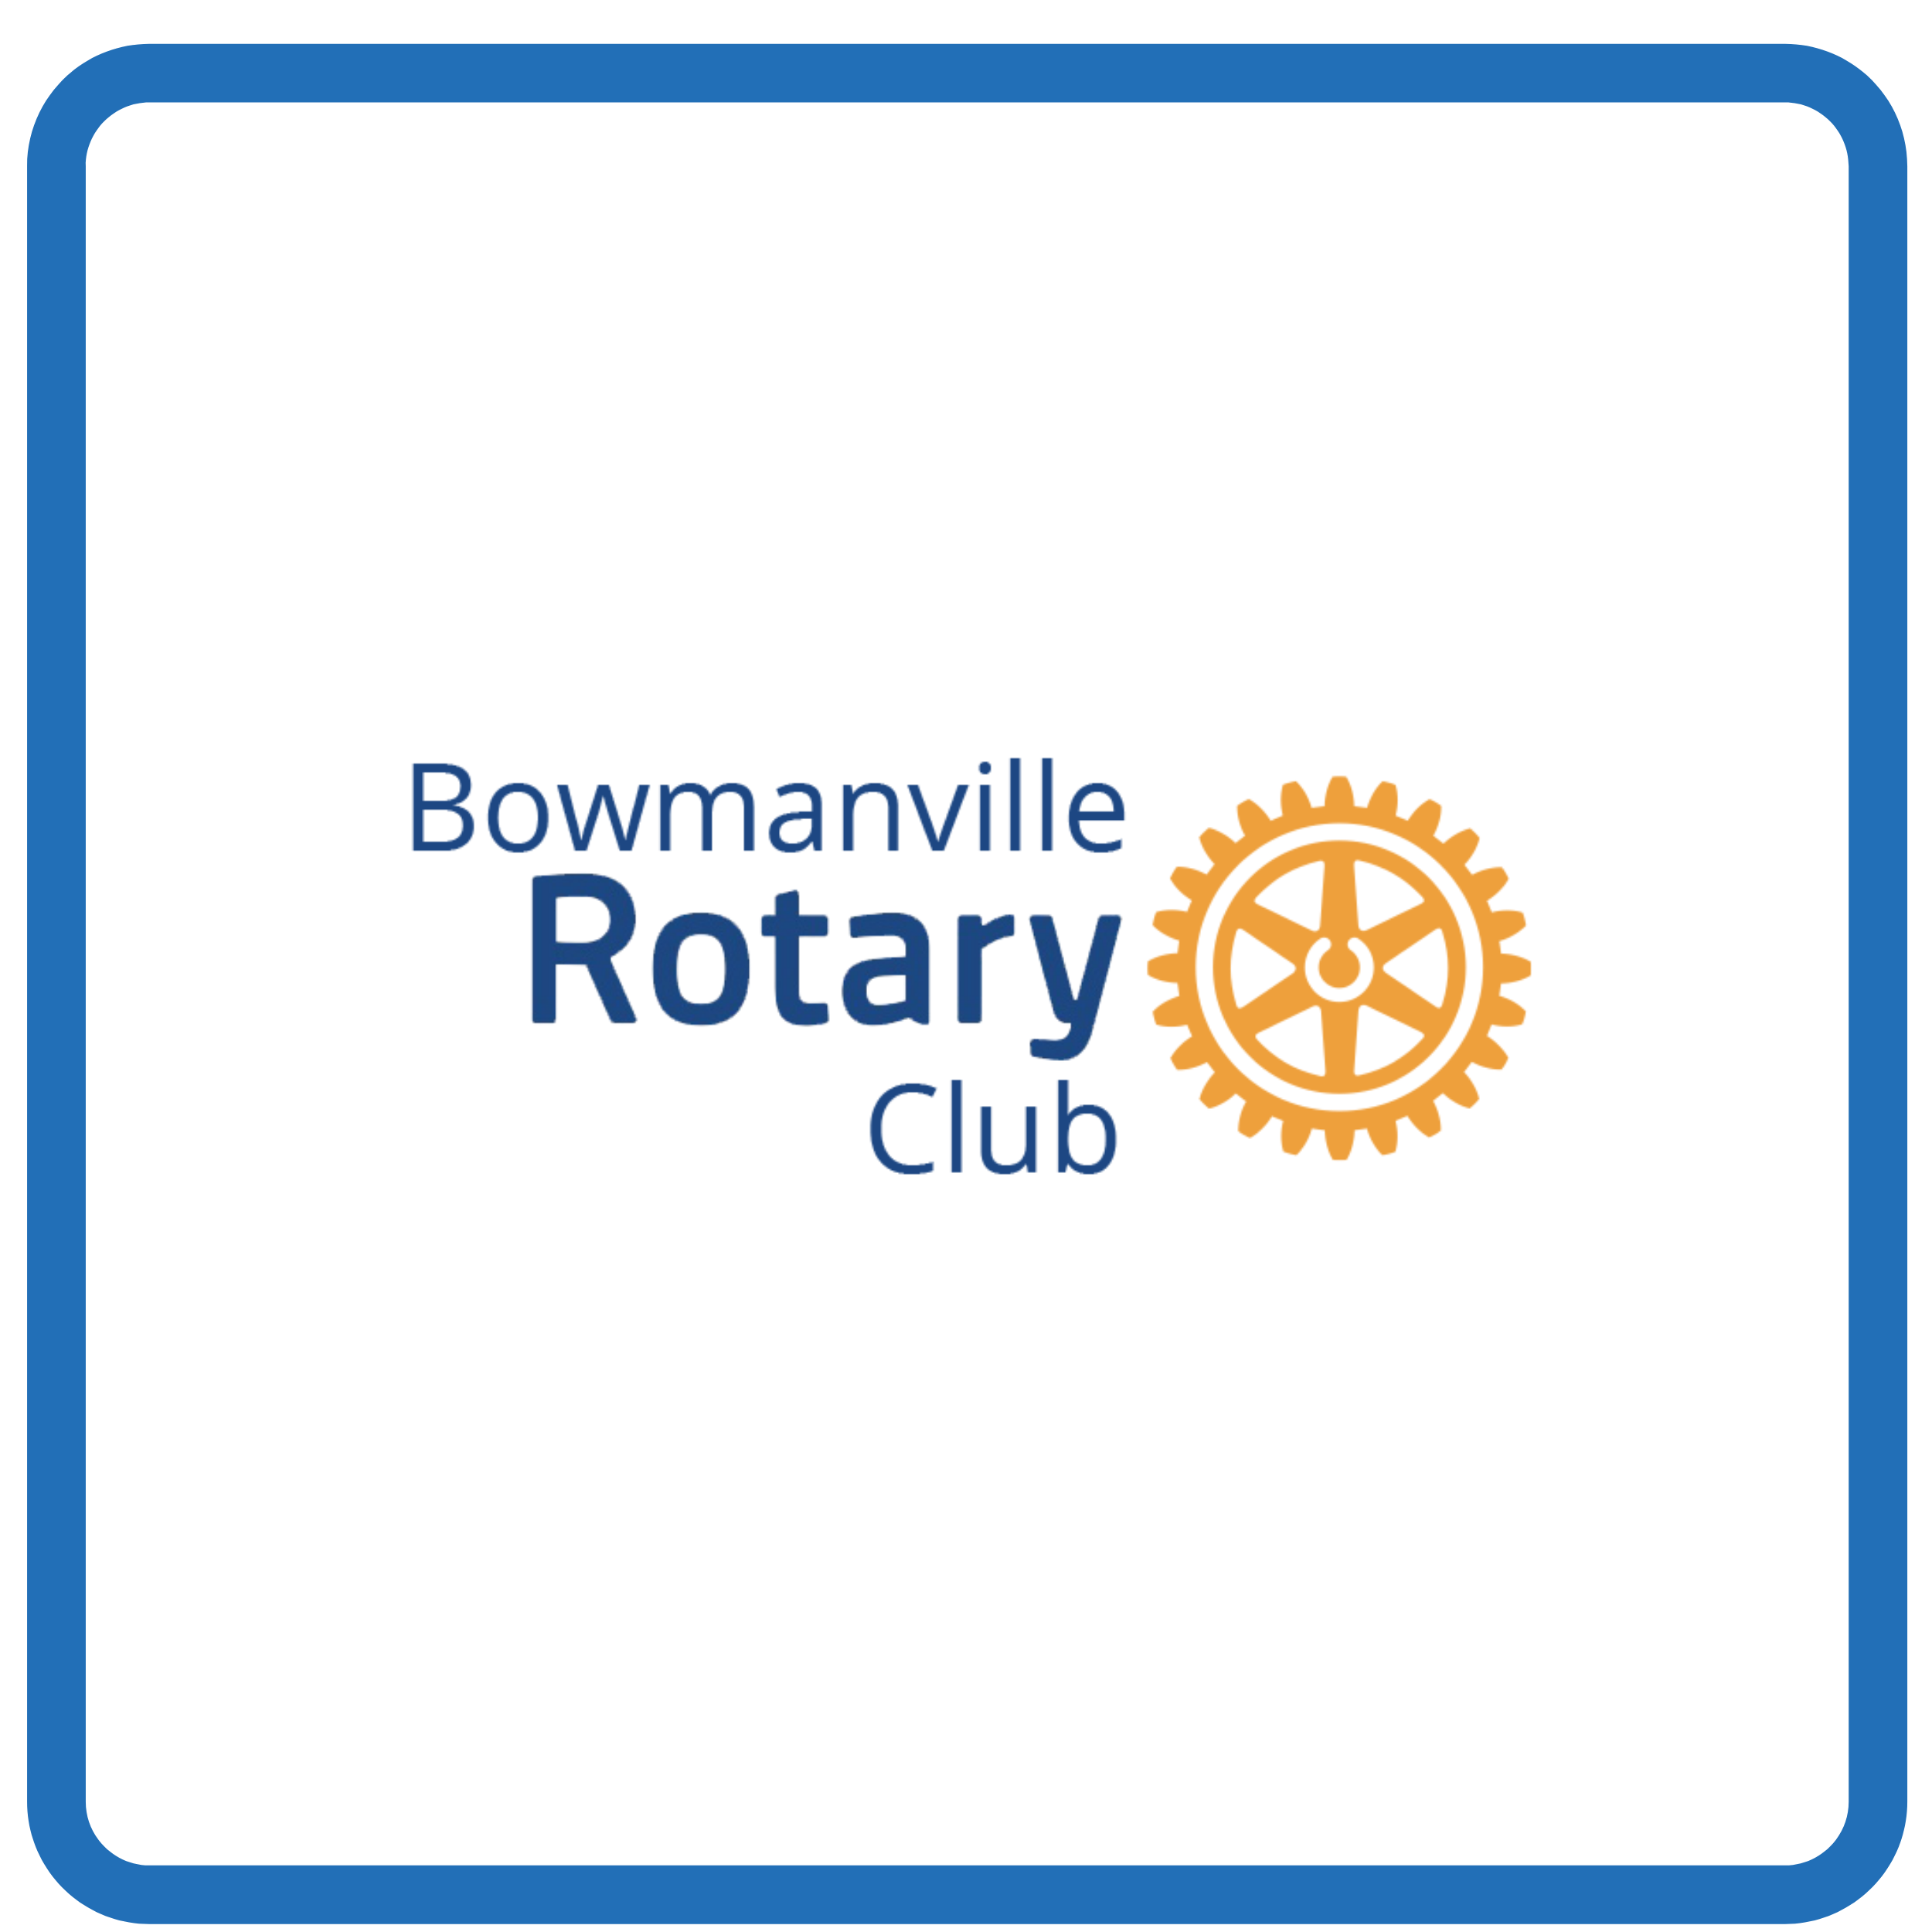 Bowmanville Rotary Club